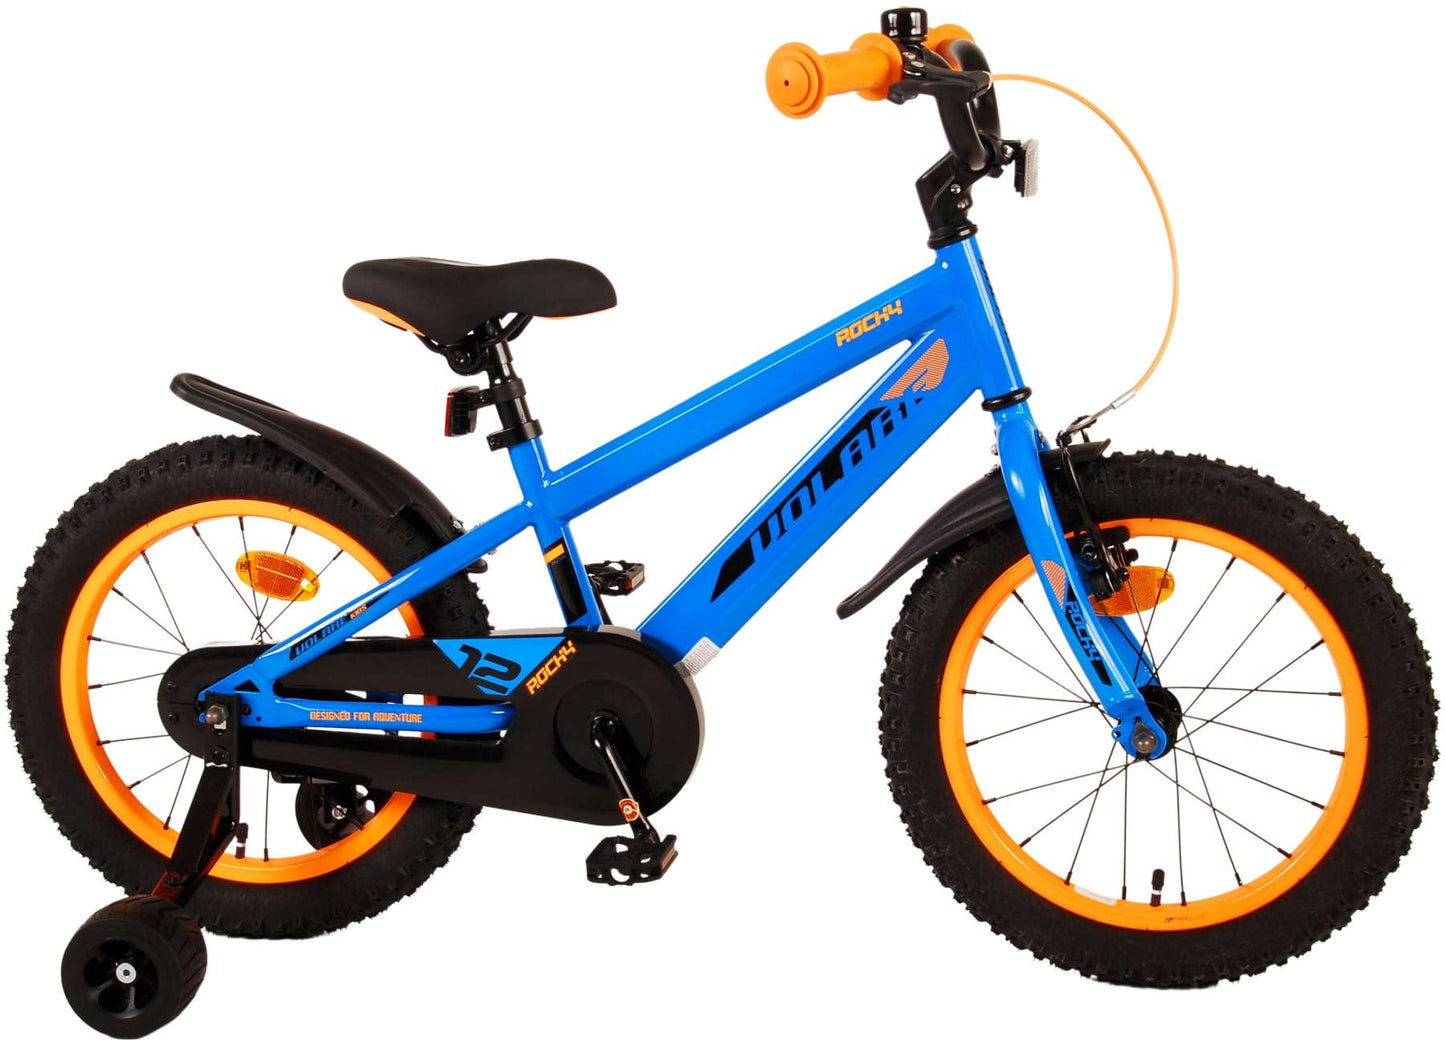 Bicicleta para niños Rocky de Vlare - Niños - 16 pulgadas - Azul